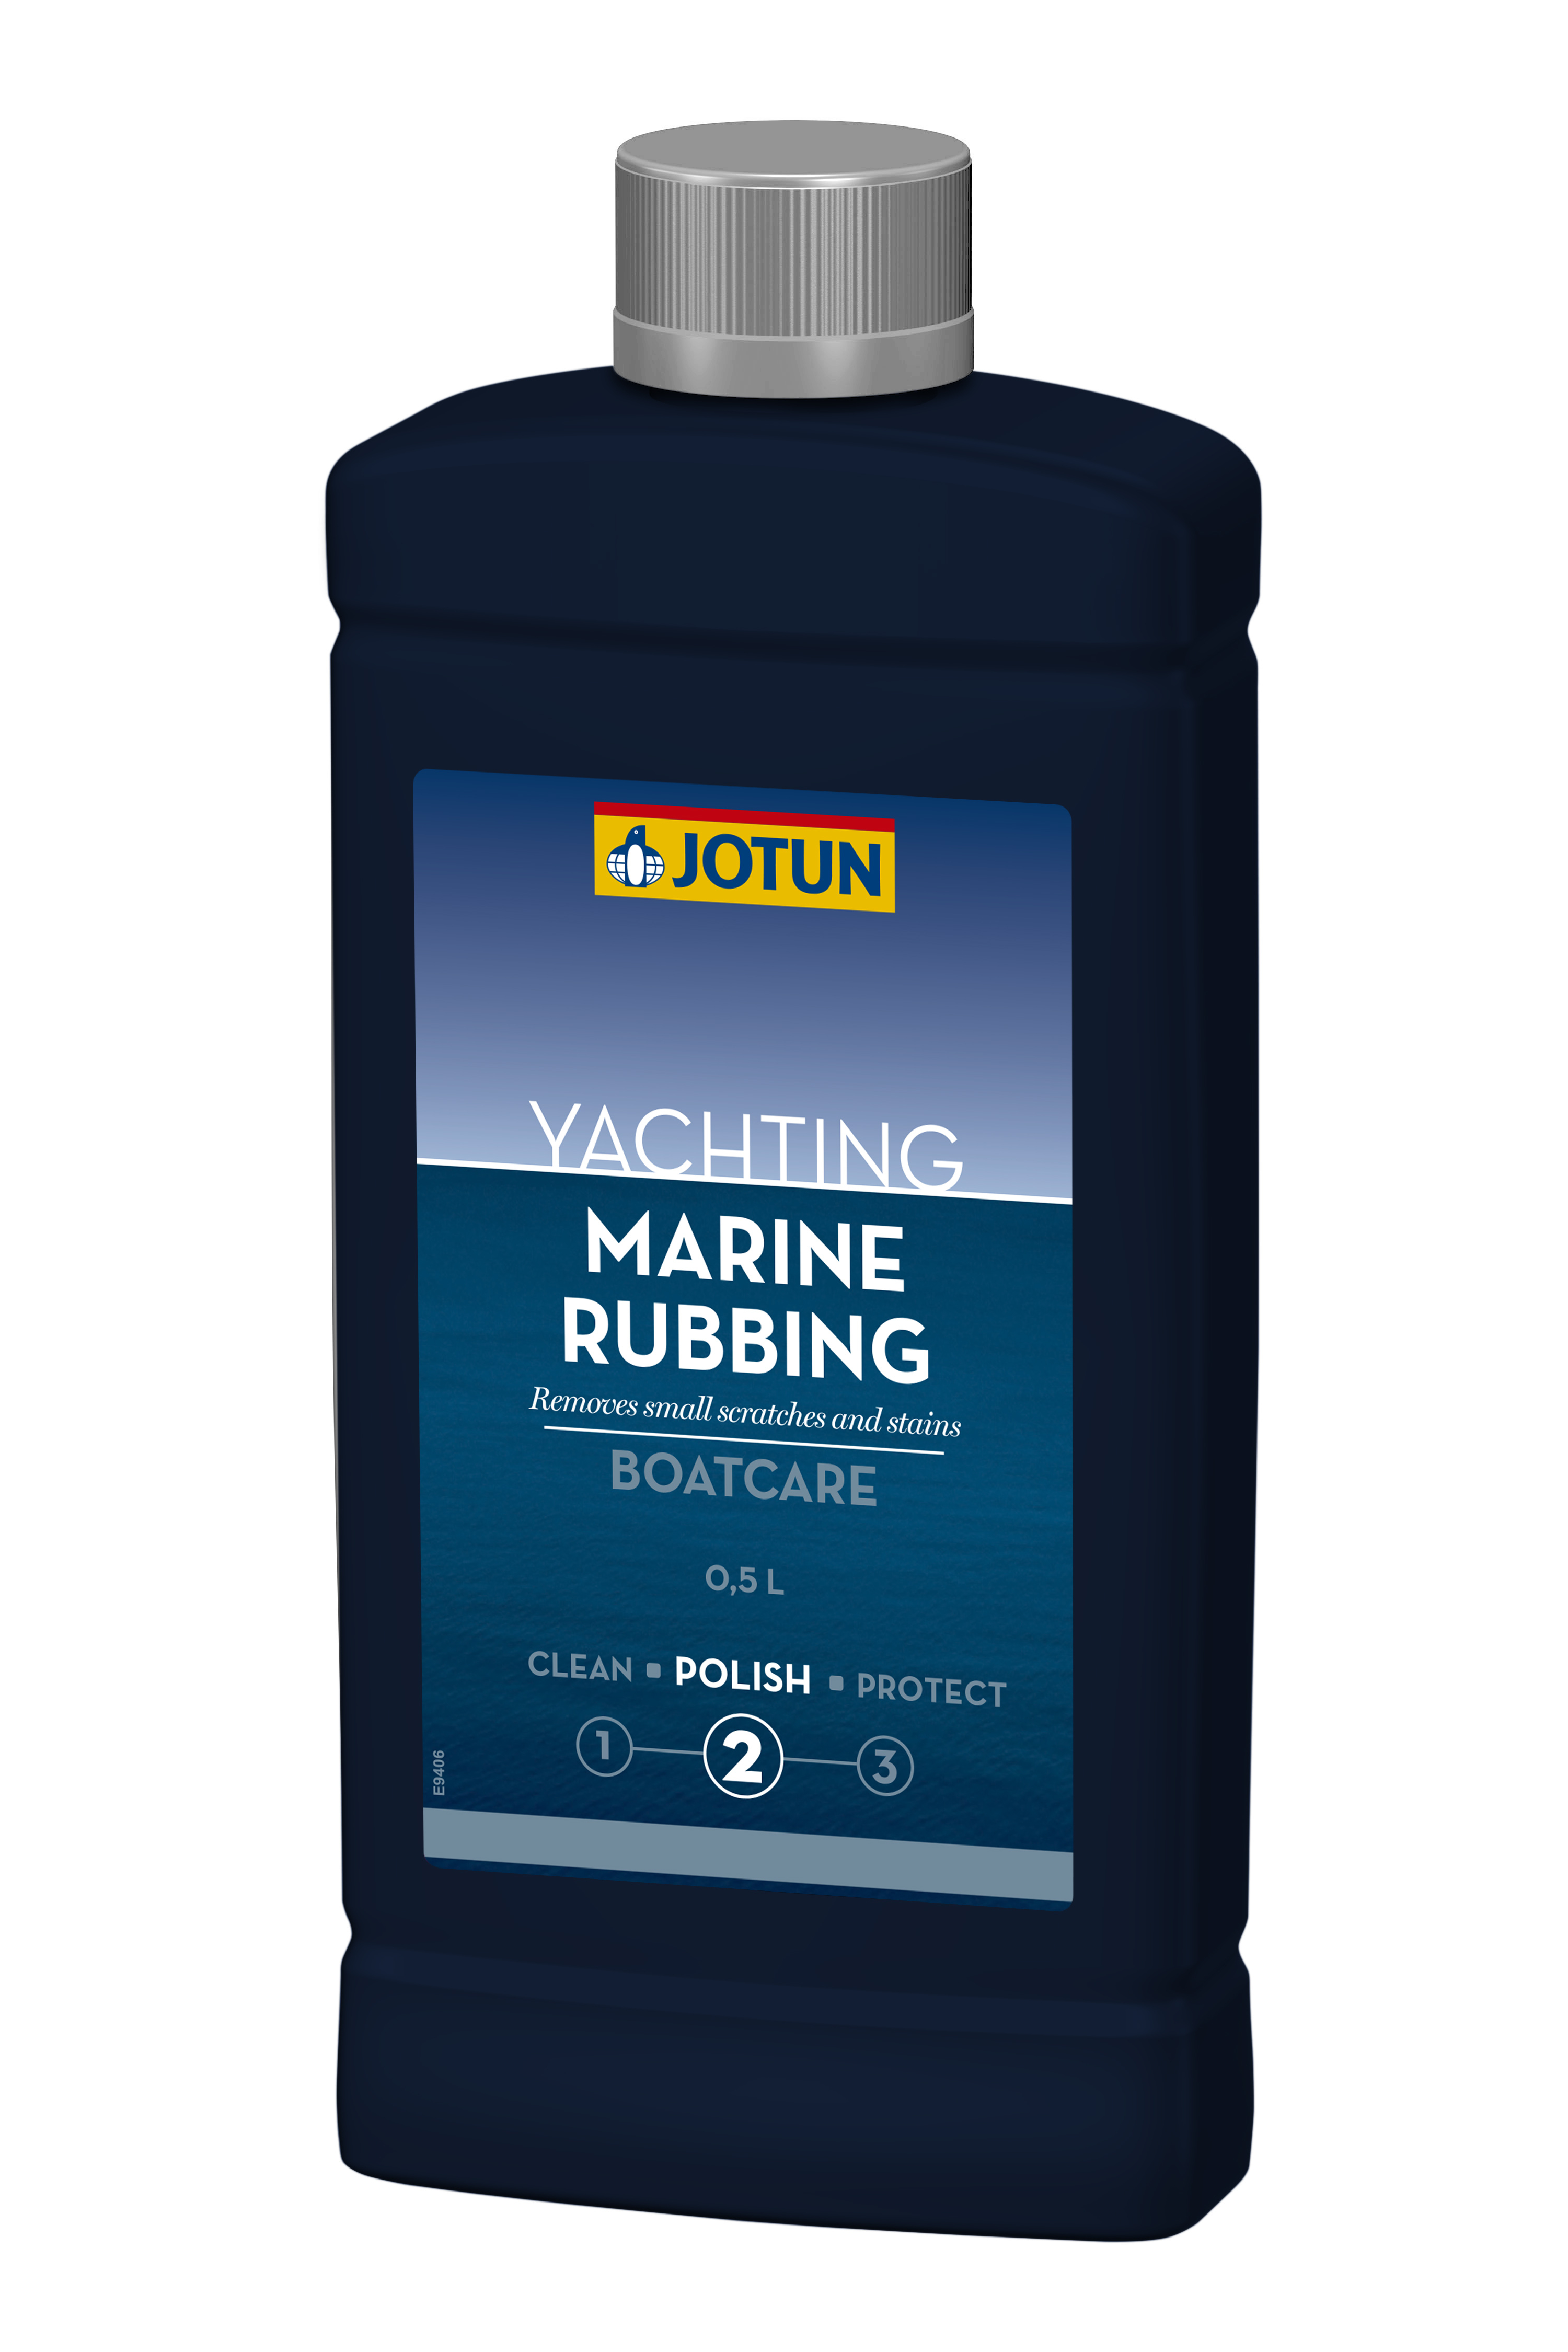 Jotun marine rubbing 0.5l